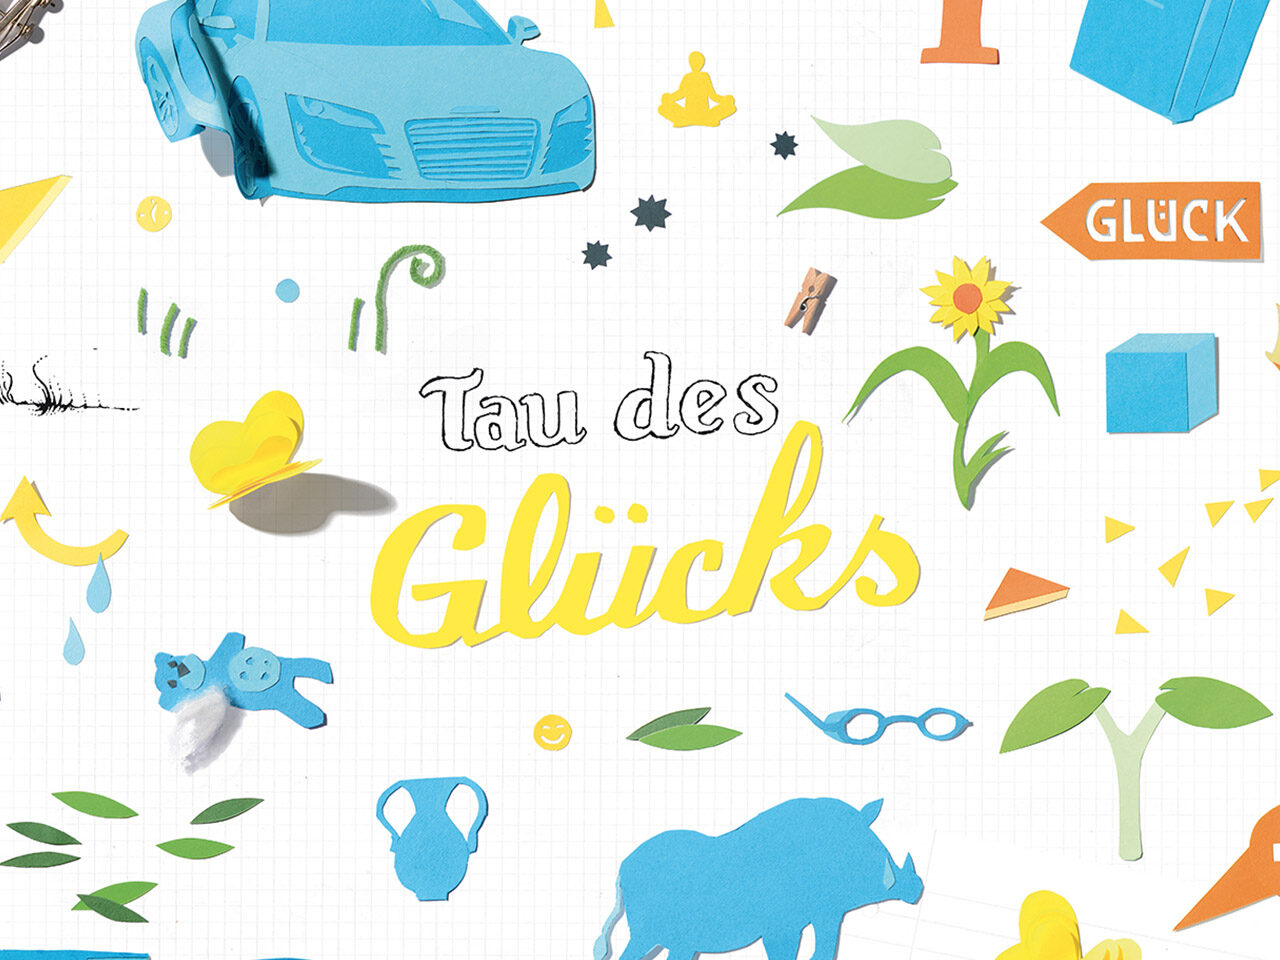 Projekticon_Illu_Tau-des-Gluecks